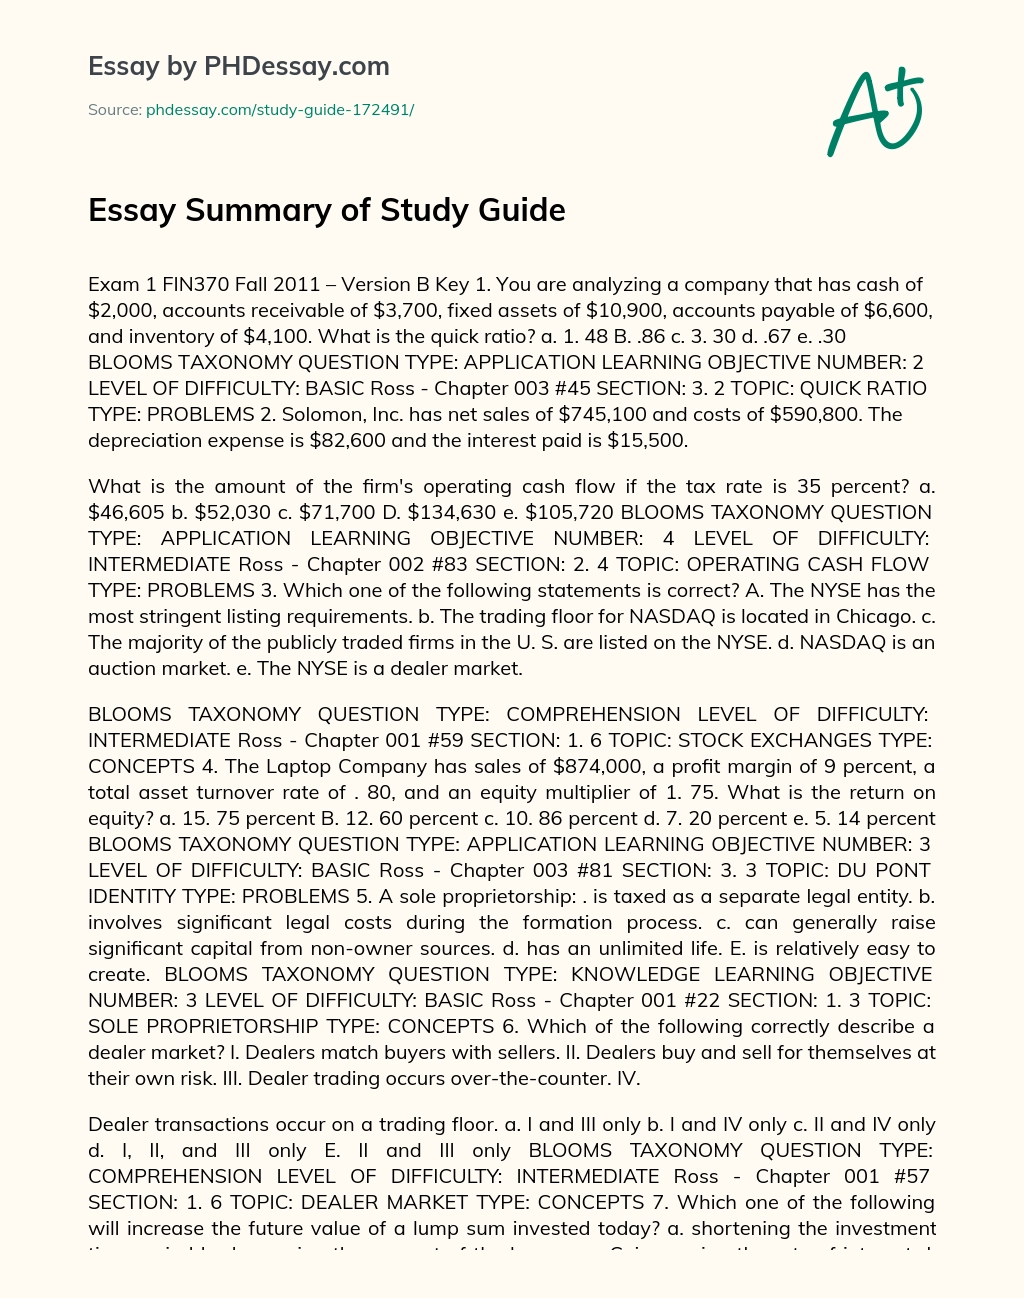 Essay Summary of Study Guide essay